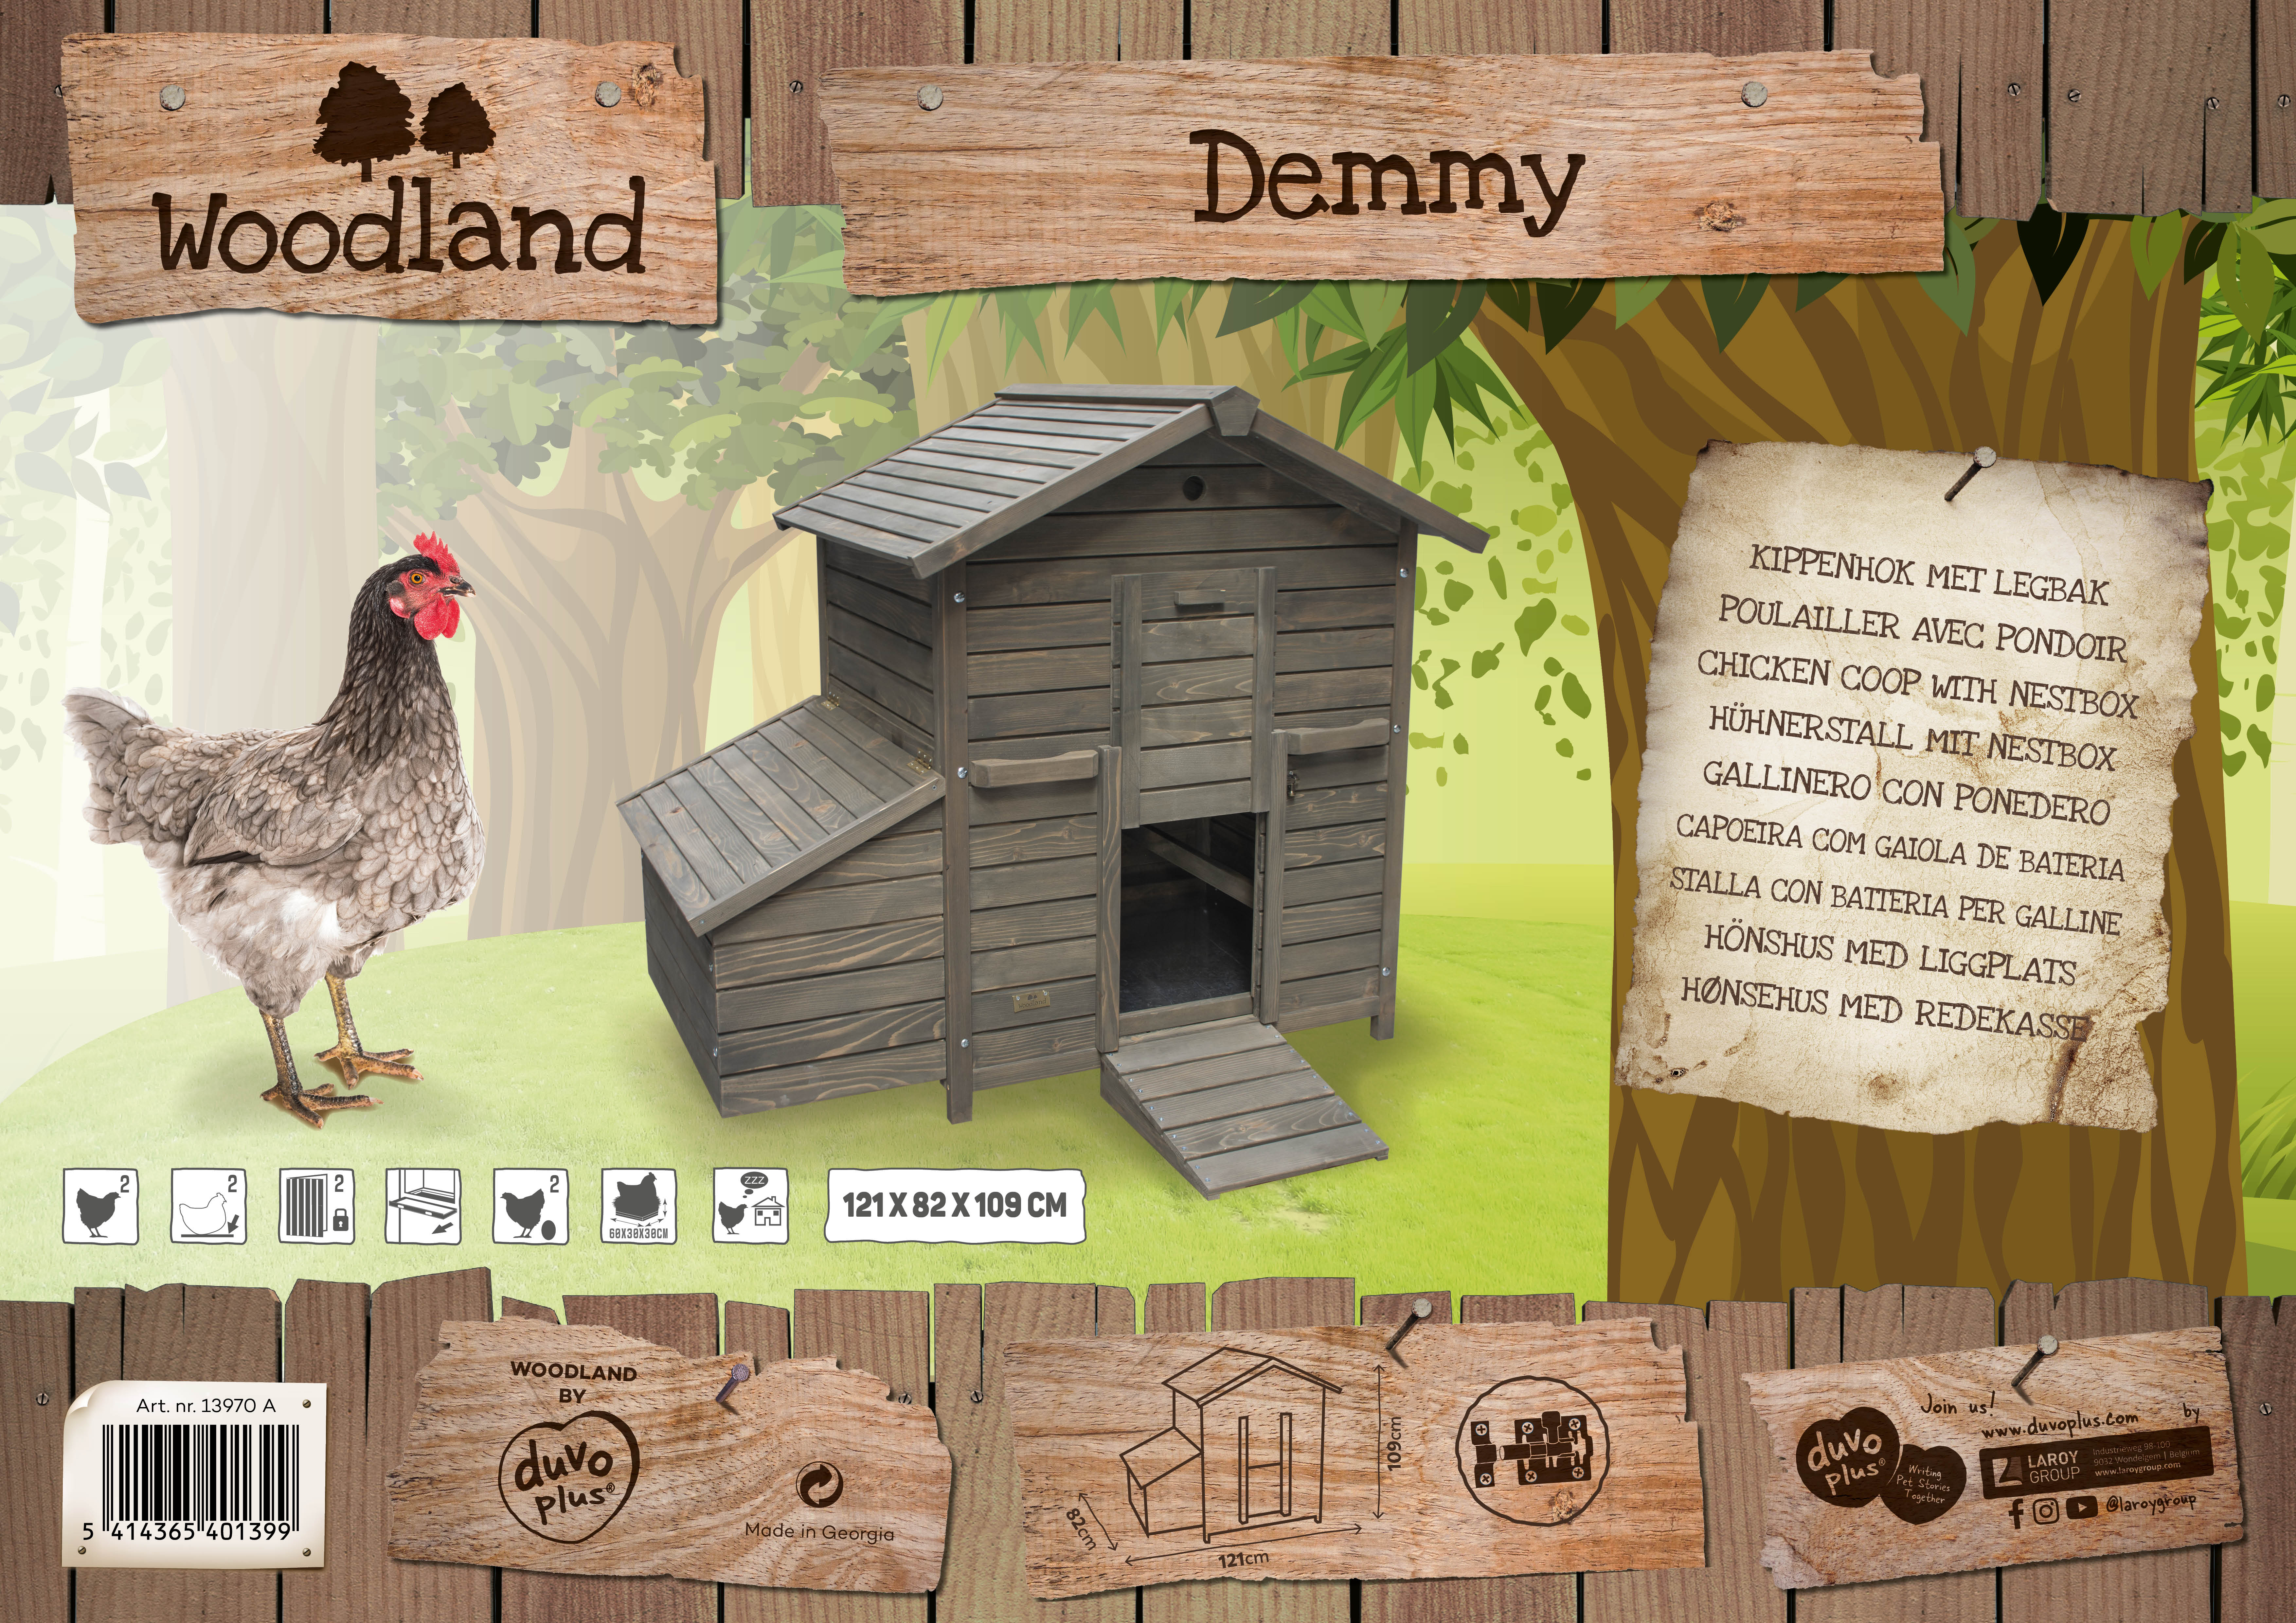 Opgetild echo zoet De nieuwe Woodland kippenhokken - Nieuws Detail - Laroy Group - Uitmuntend  in huisdierproducten